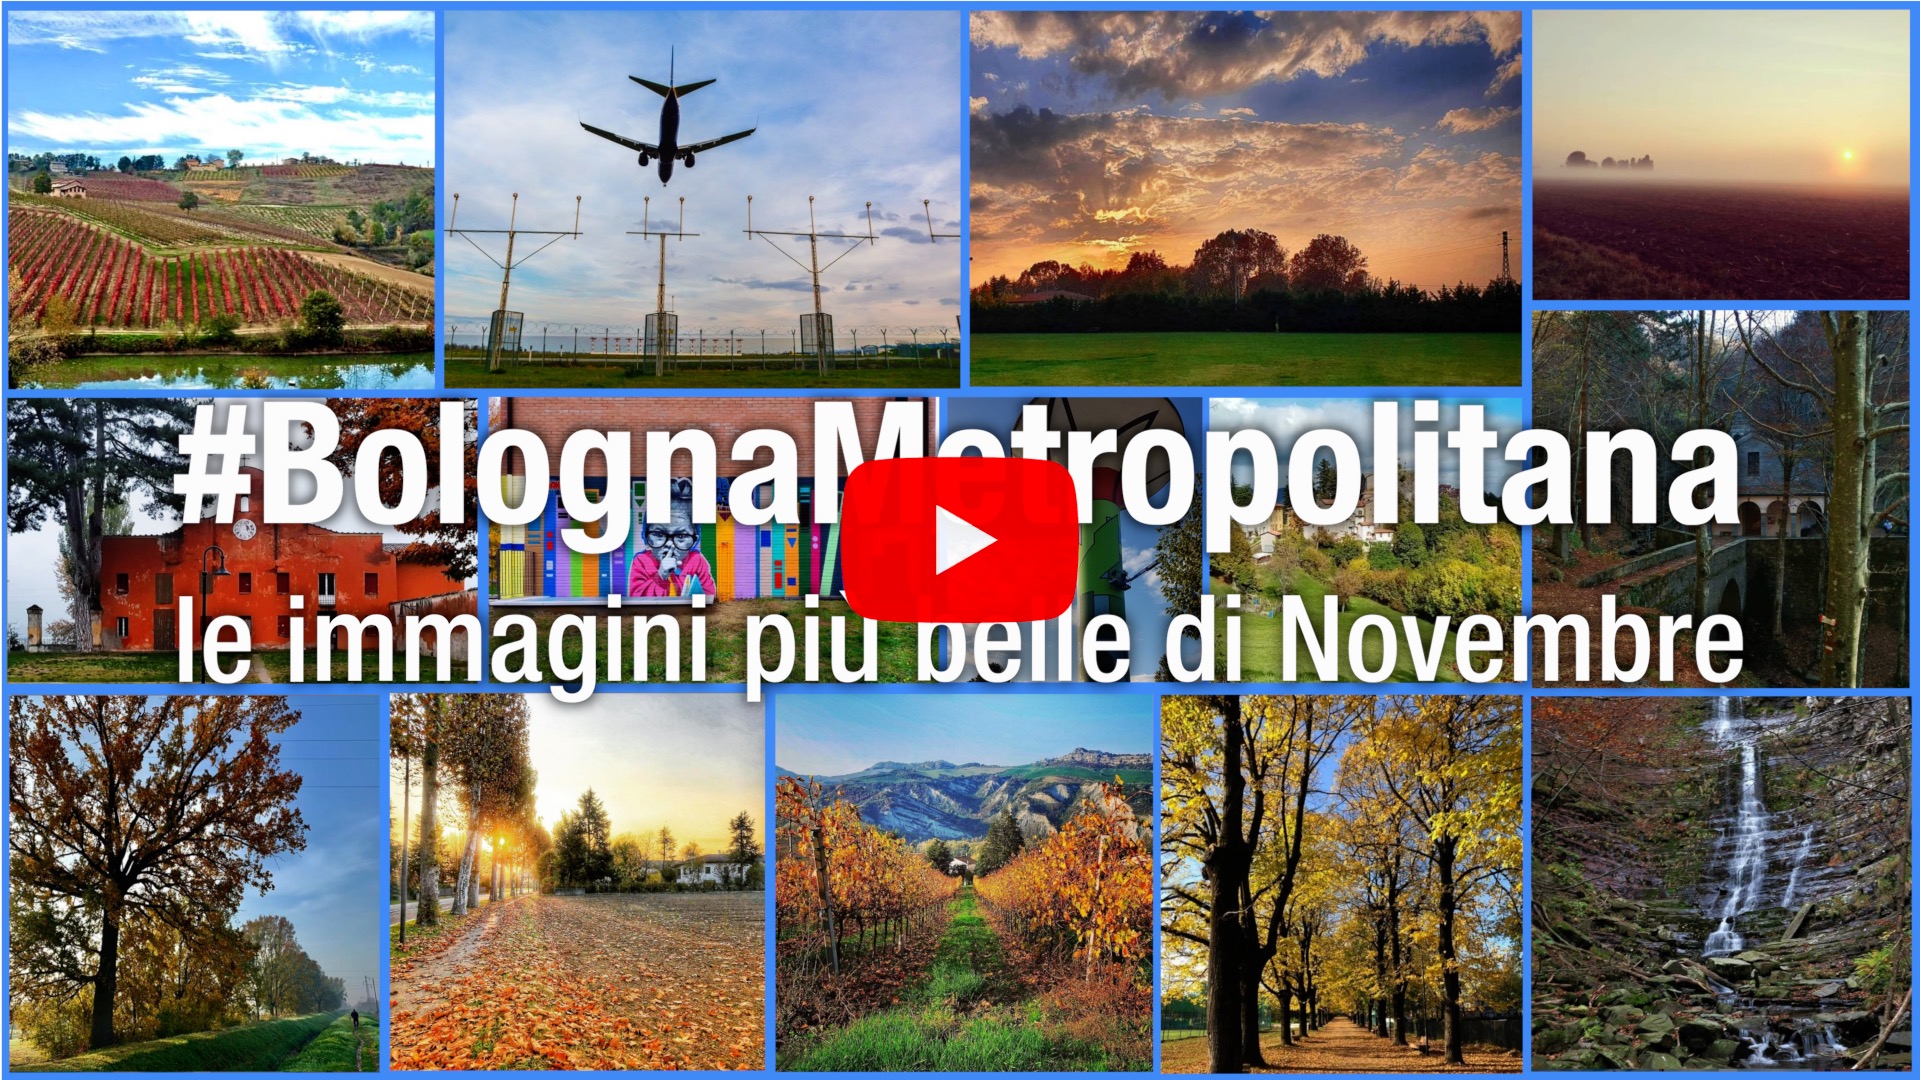 Portale Bolognametropolitana Le Immagini Piu Belle Di Novembre